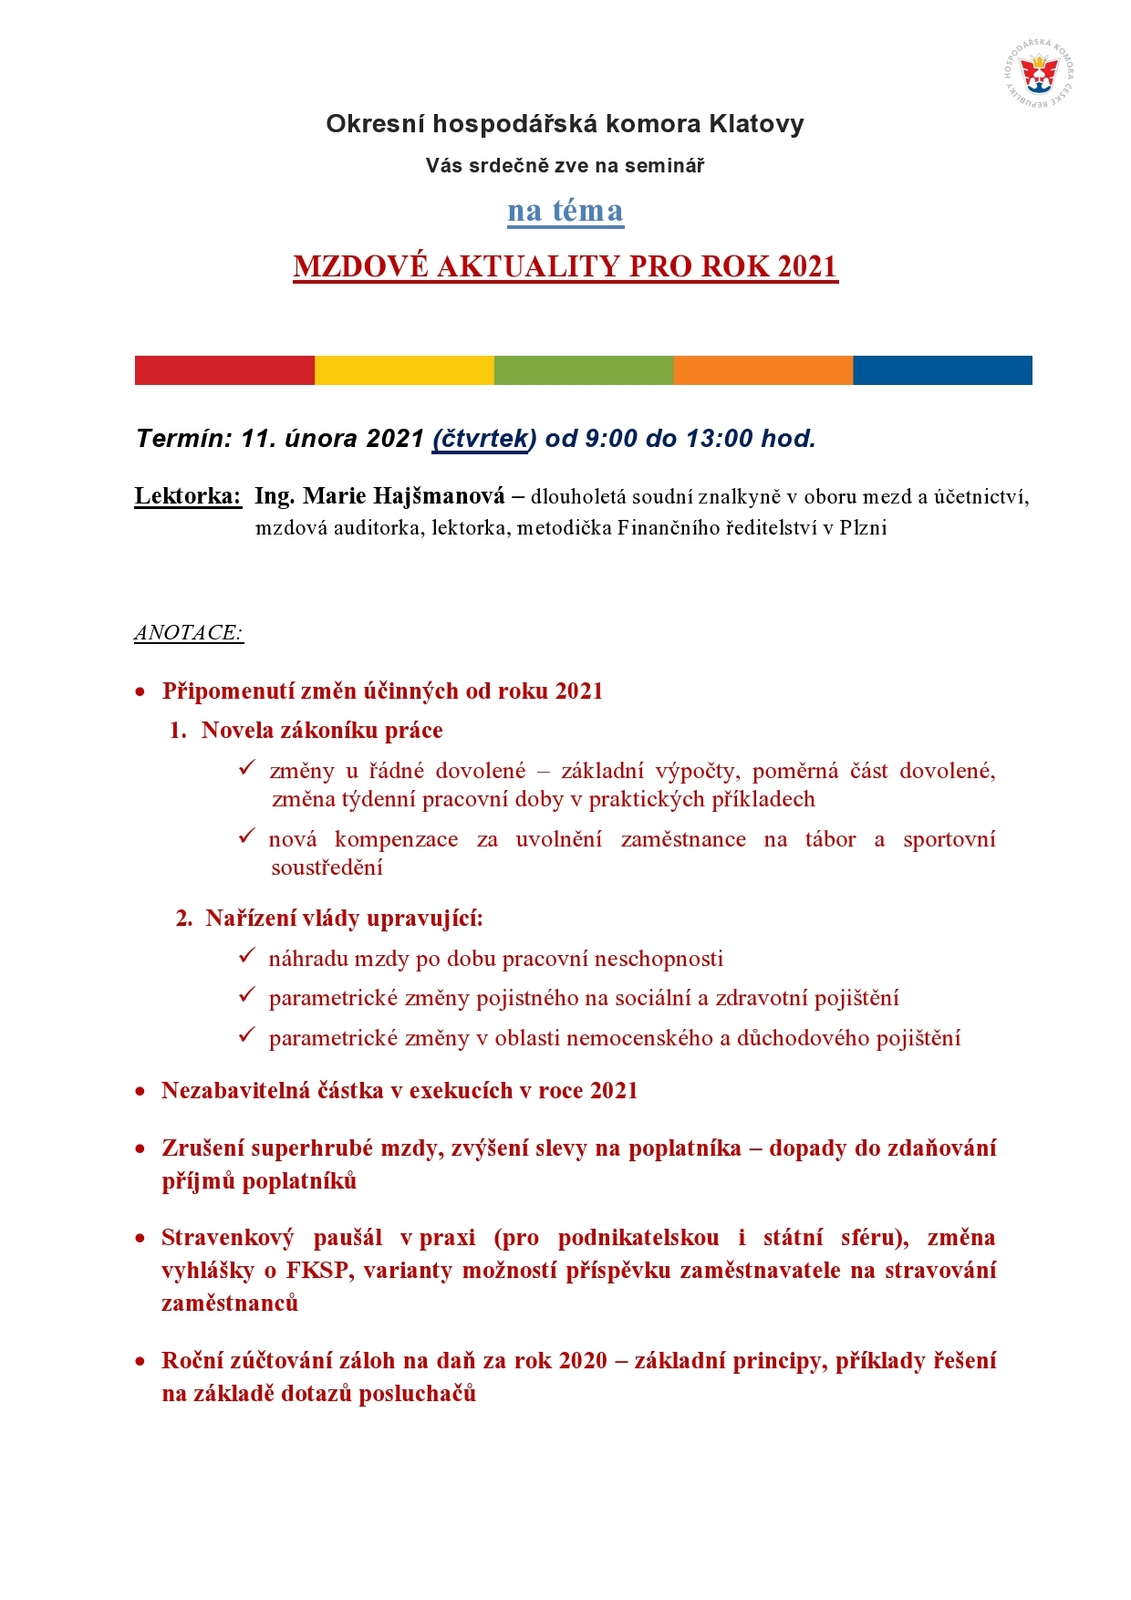 Pozvánka - Mzdové aktuality pro rok 2021-page0001.jpg